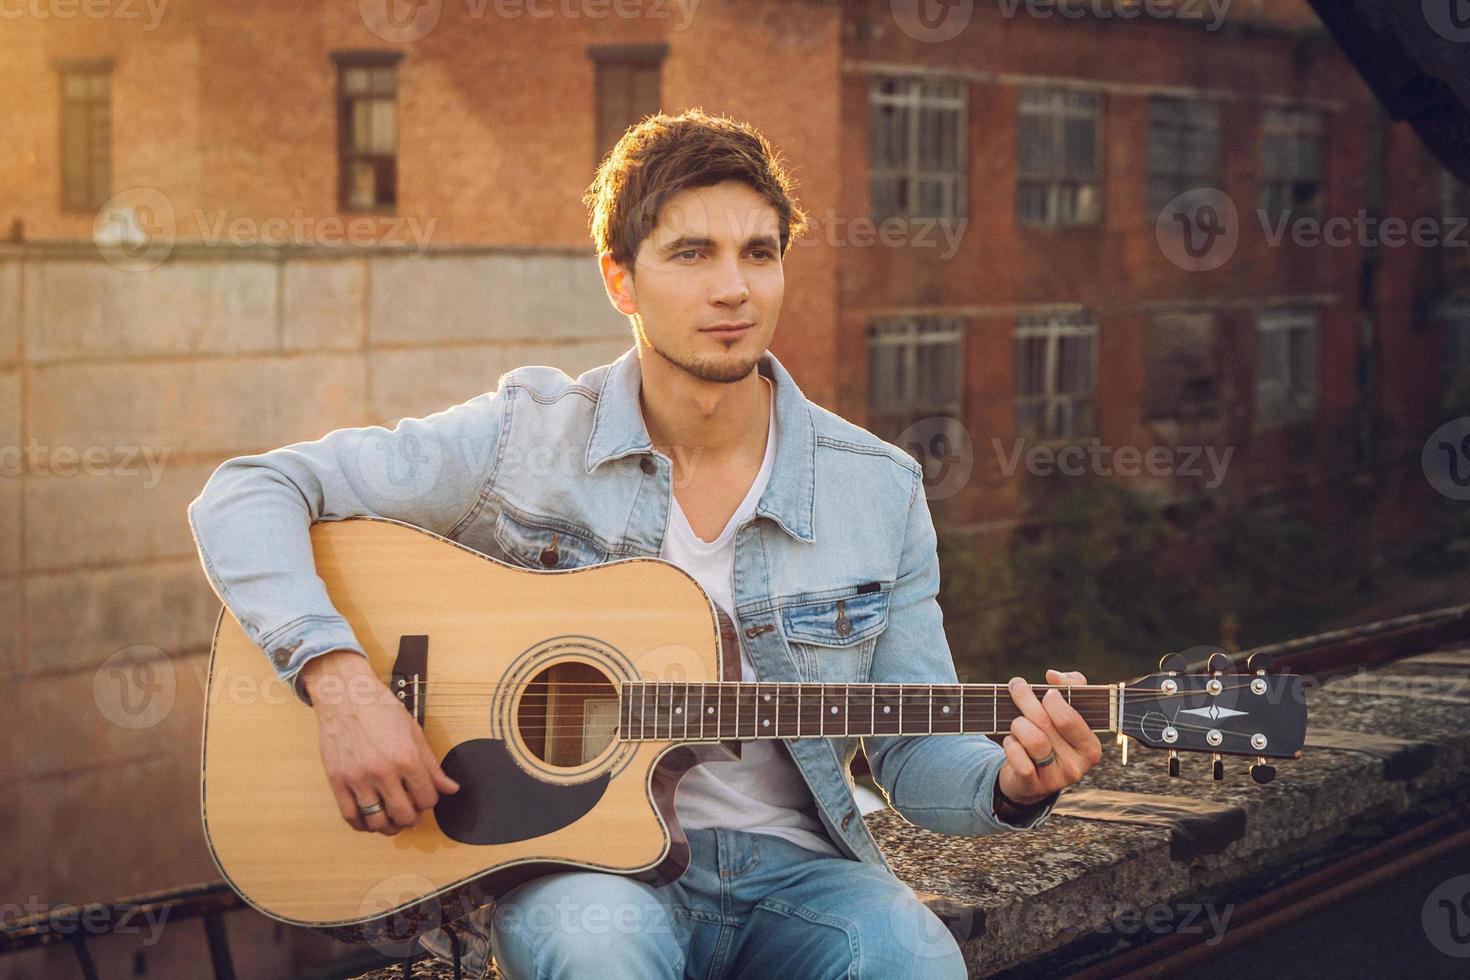 jovem tocando guitarra na cidade em fundo de raios de sol foto